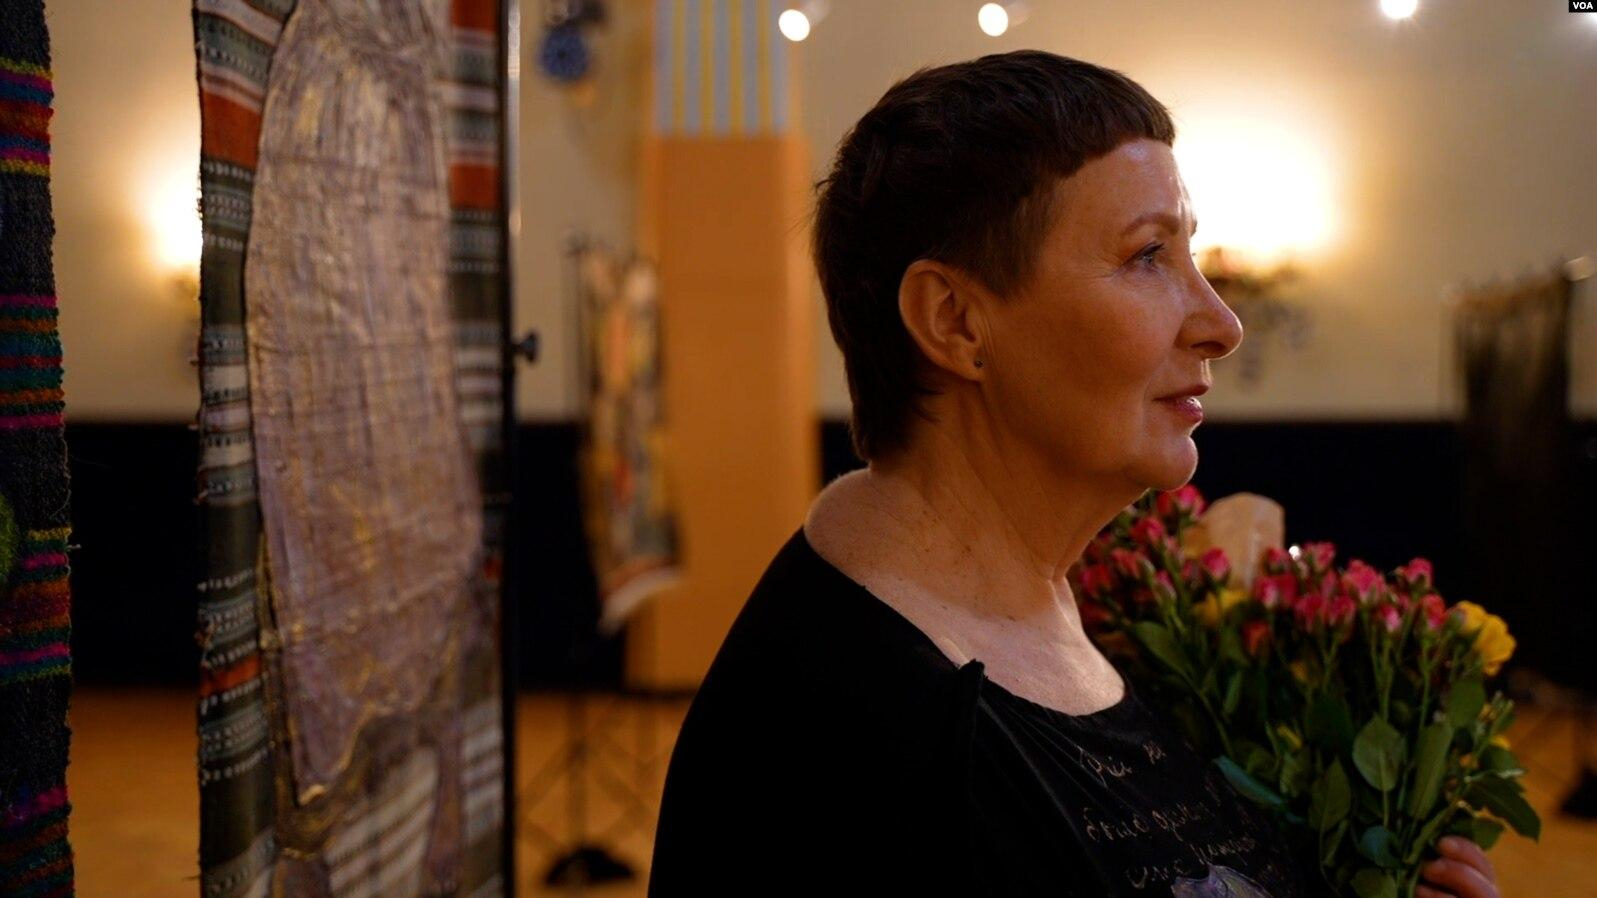 "Репортаж на килимі": українська художниця показала свої унікальні твори у США - Новини Одеса - Закордон